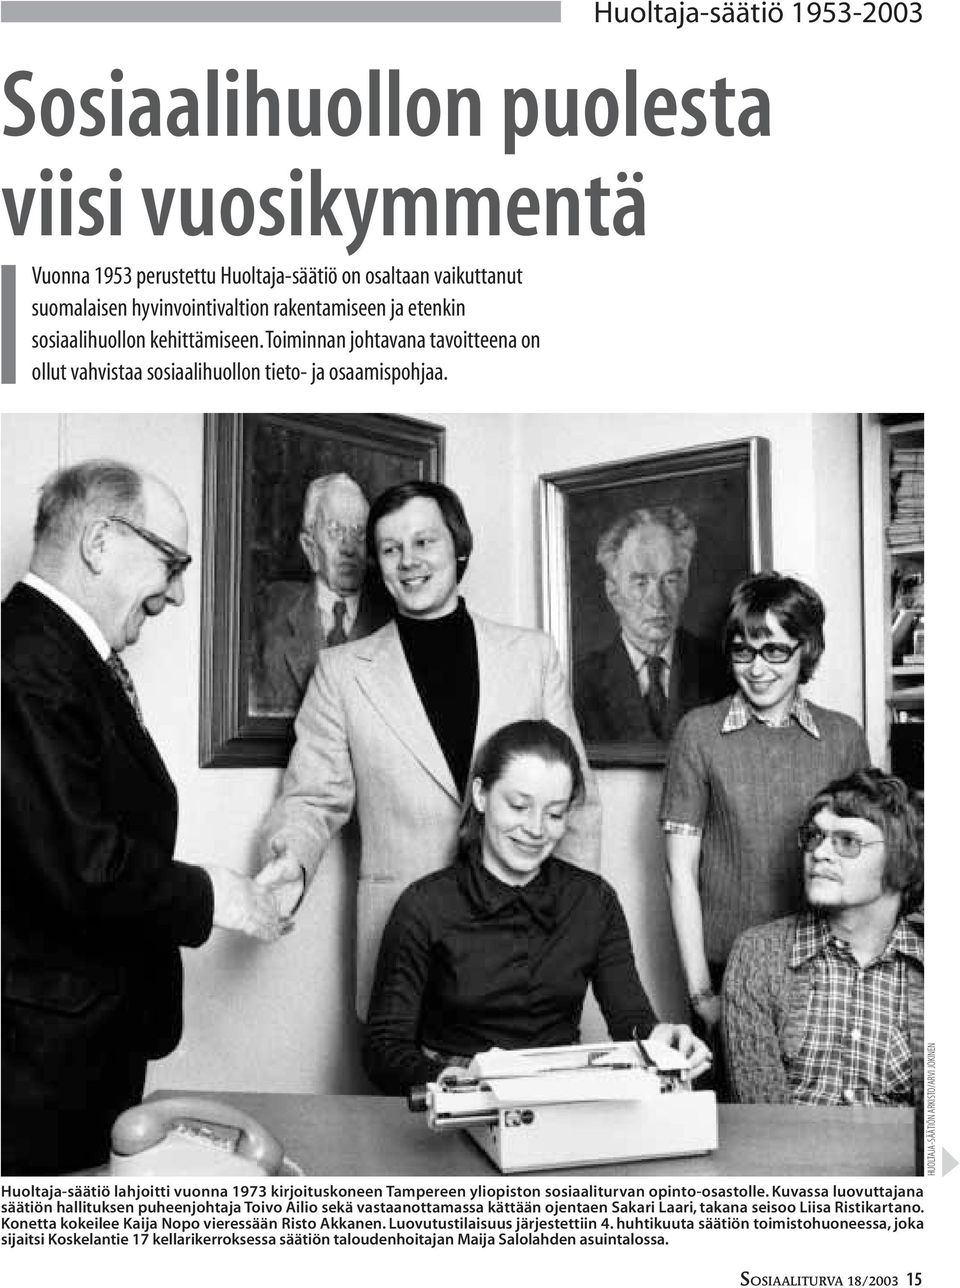 Huoltaja-säätiö 1953-2003 Huoltaja-säätiö lahjoitti vuonna 1973 kirjoituskoneen Tampereen yliopiston sosiaaliturvan opinto-osastolle.